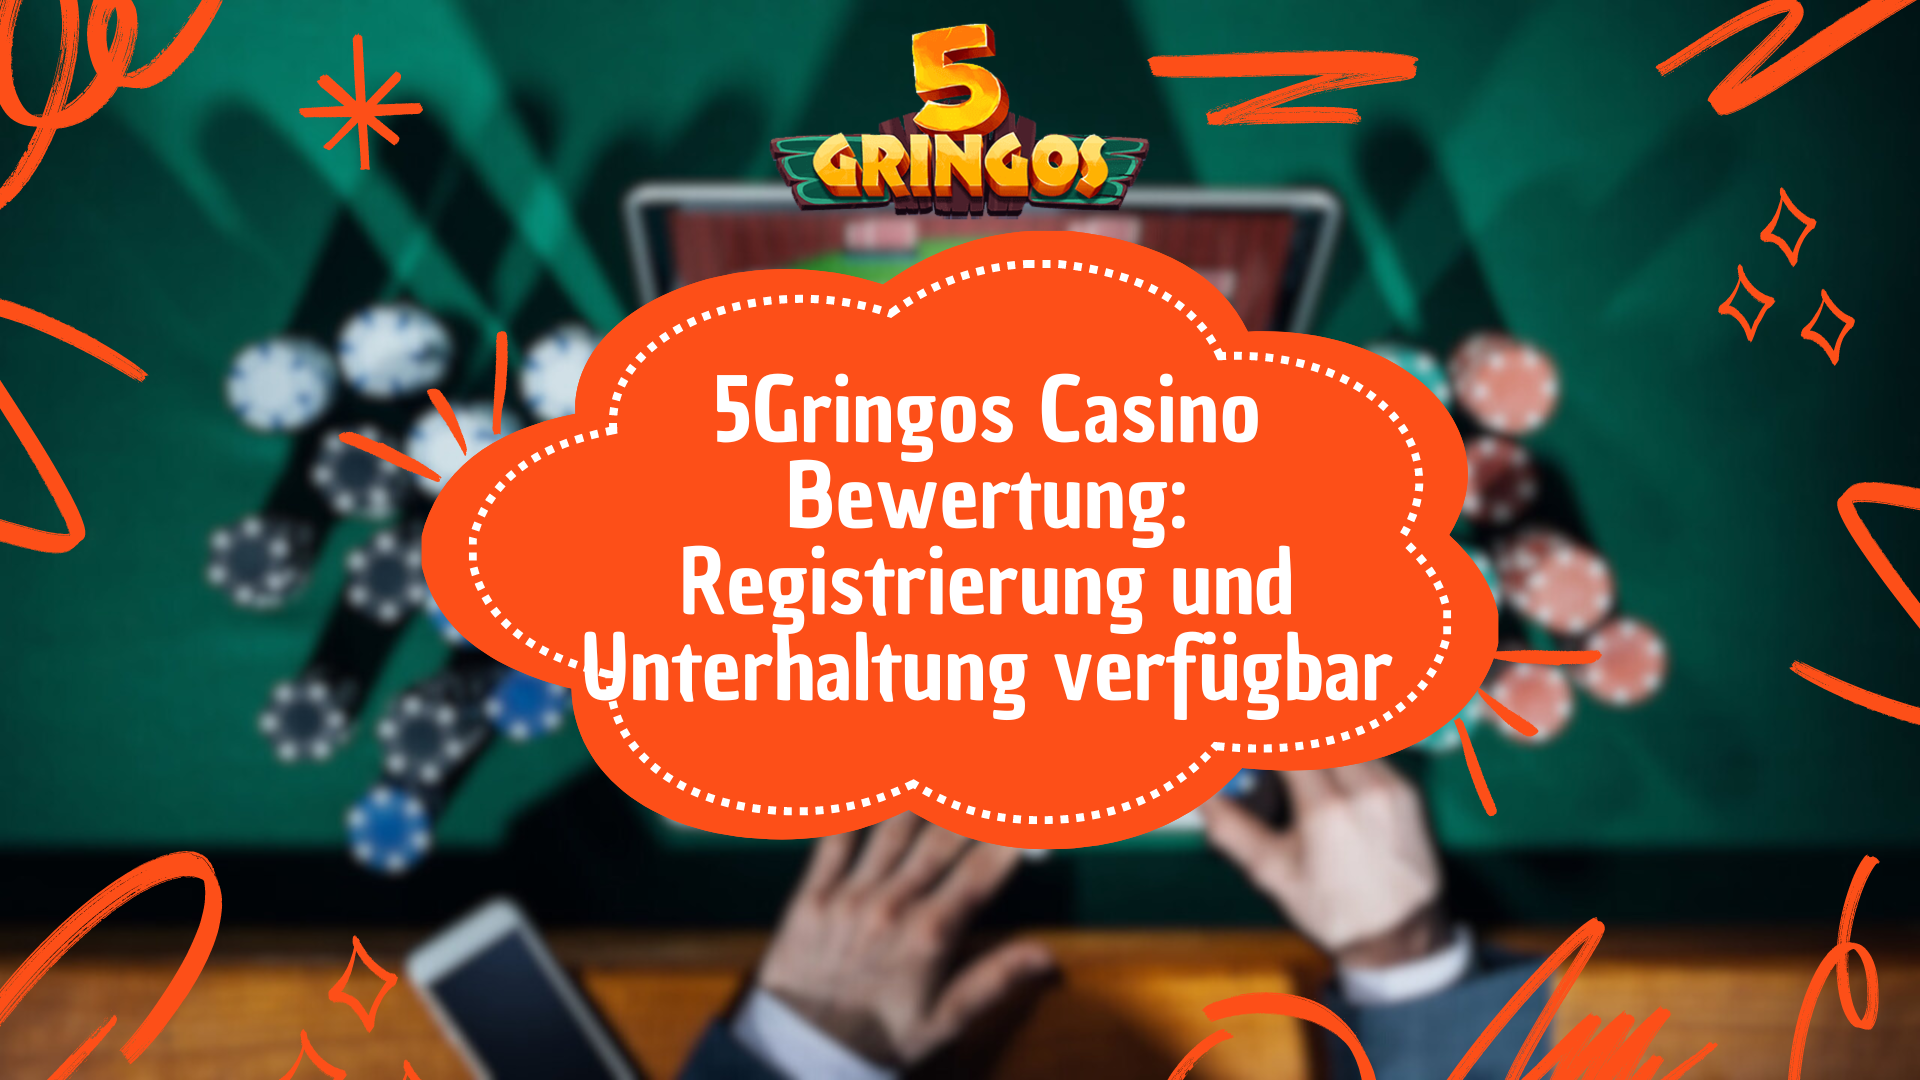 5Gringos Casino Bewertung: Registrierung und Unterhaltung verfügbar